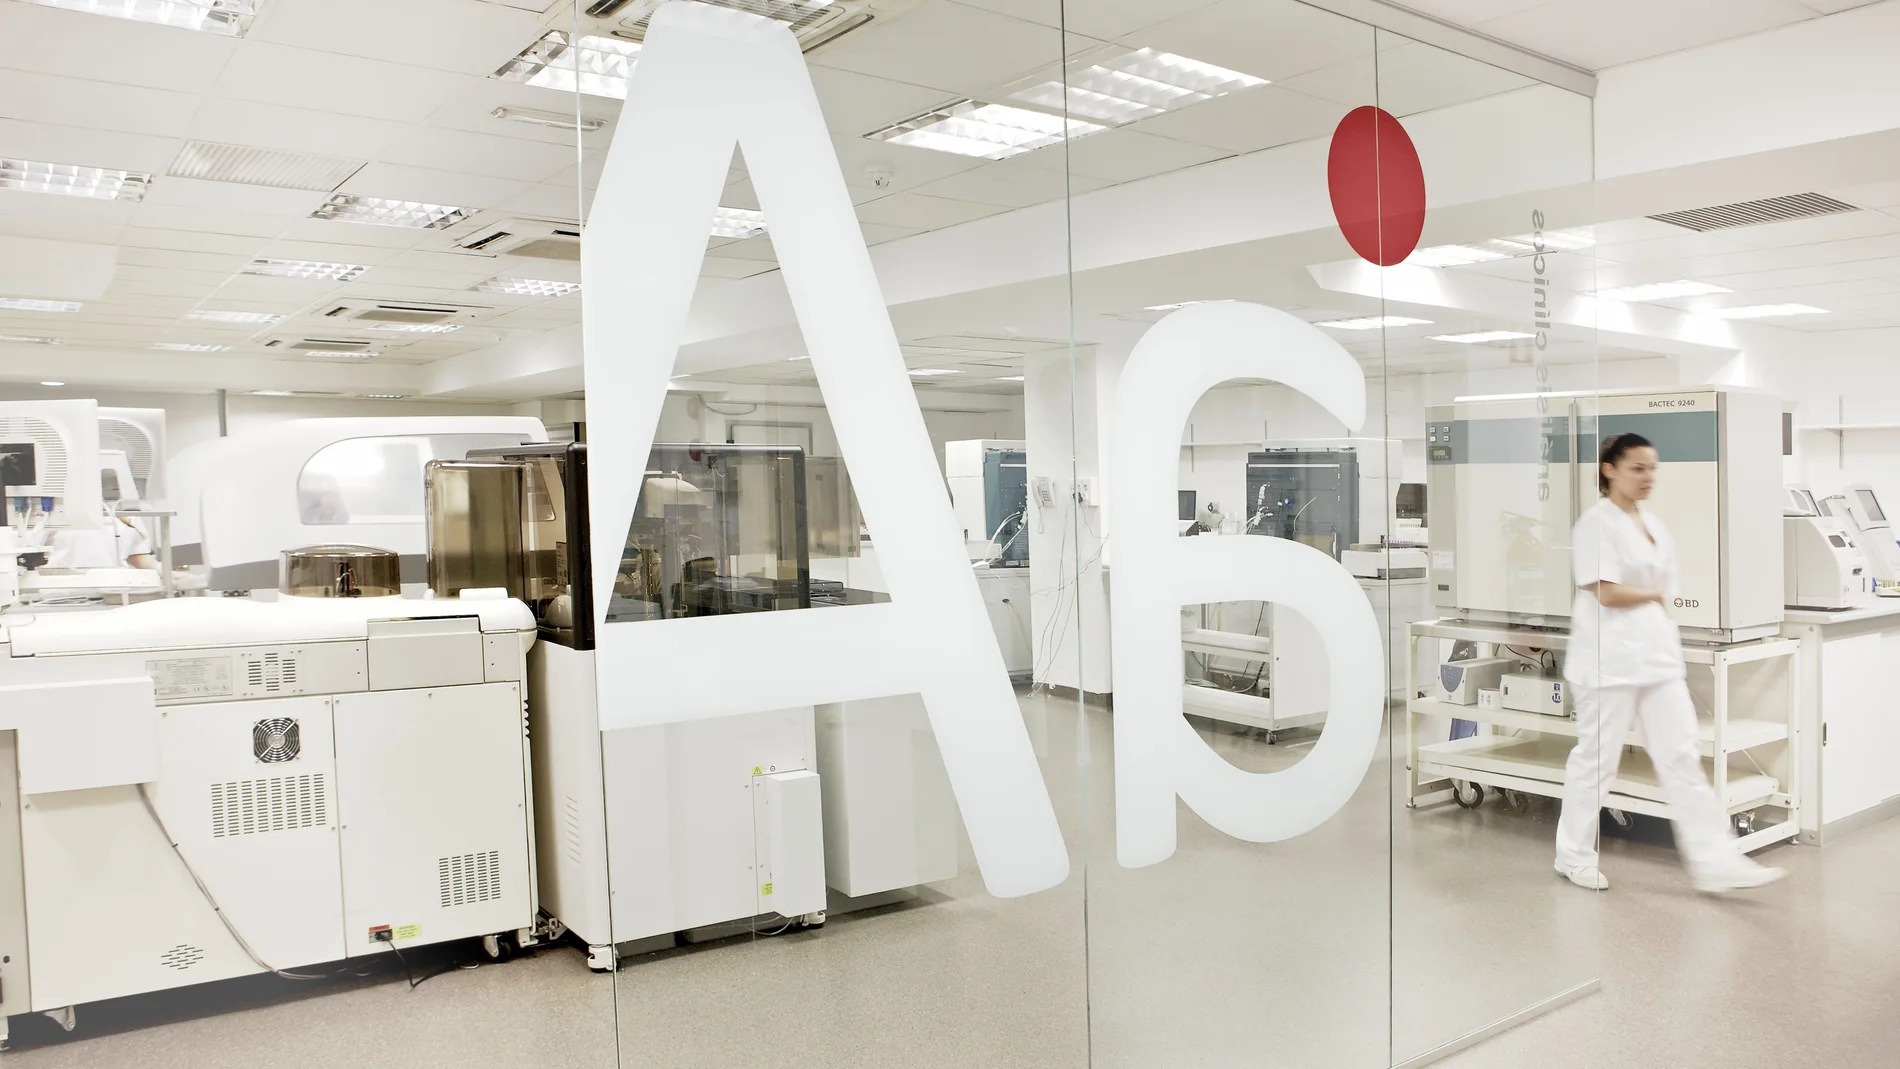 Analiza se fundó en 2011 se inició su actividad como laboratorio de análisis clínicos